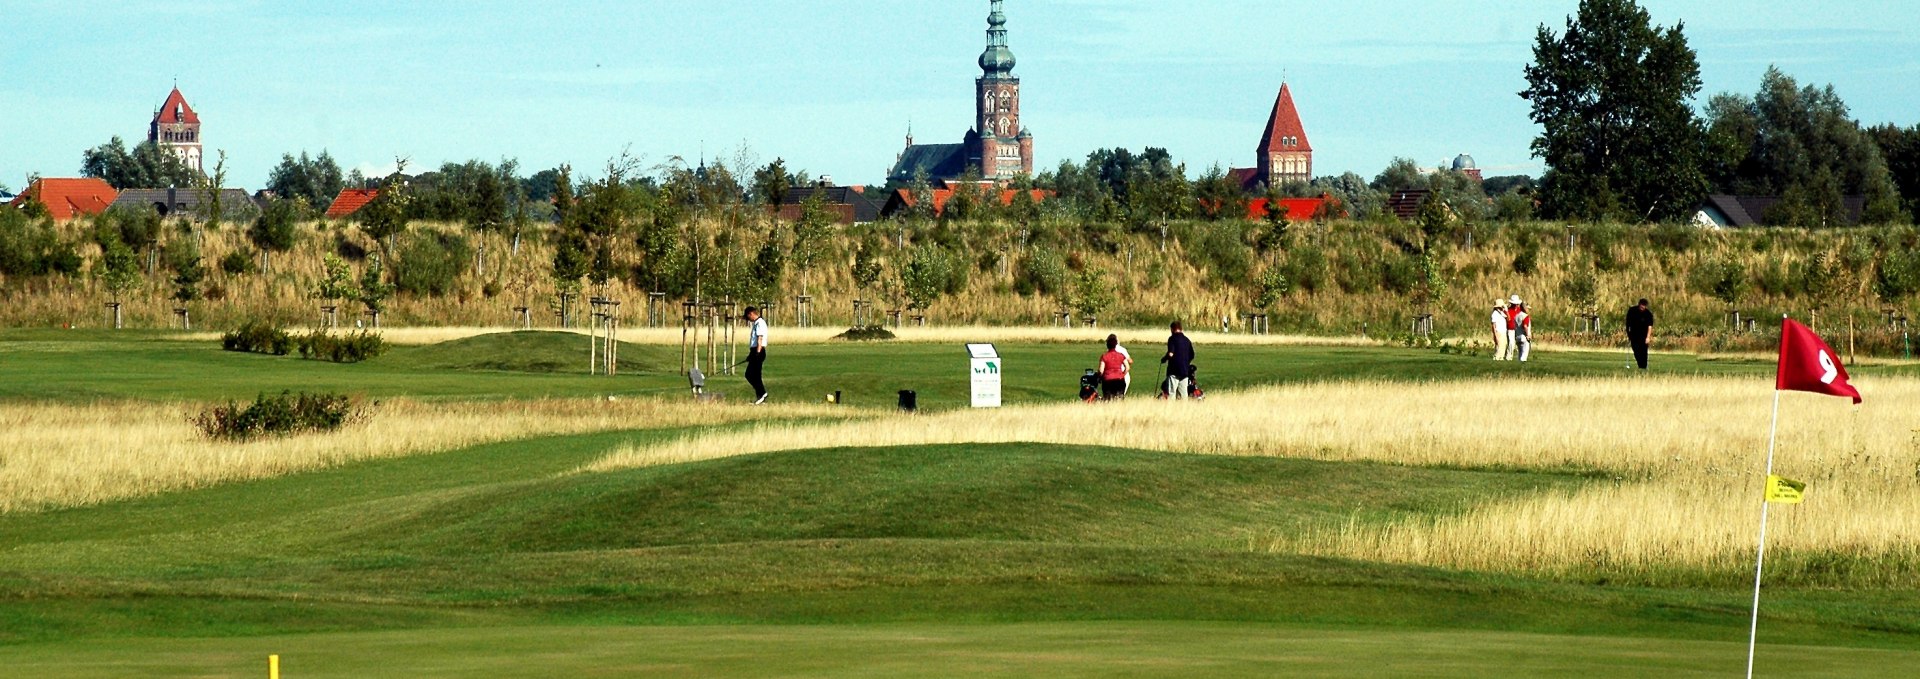 Golfclub Greifswald, © Golfclub Greifswald